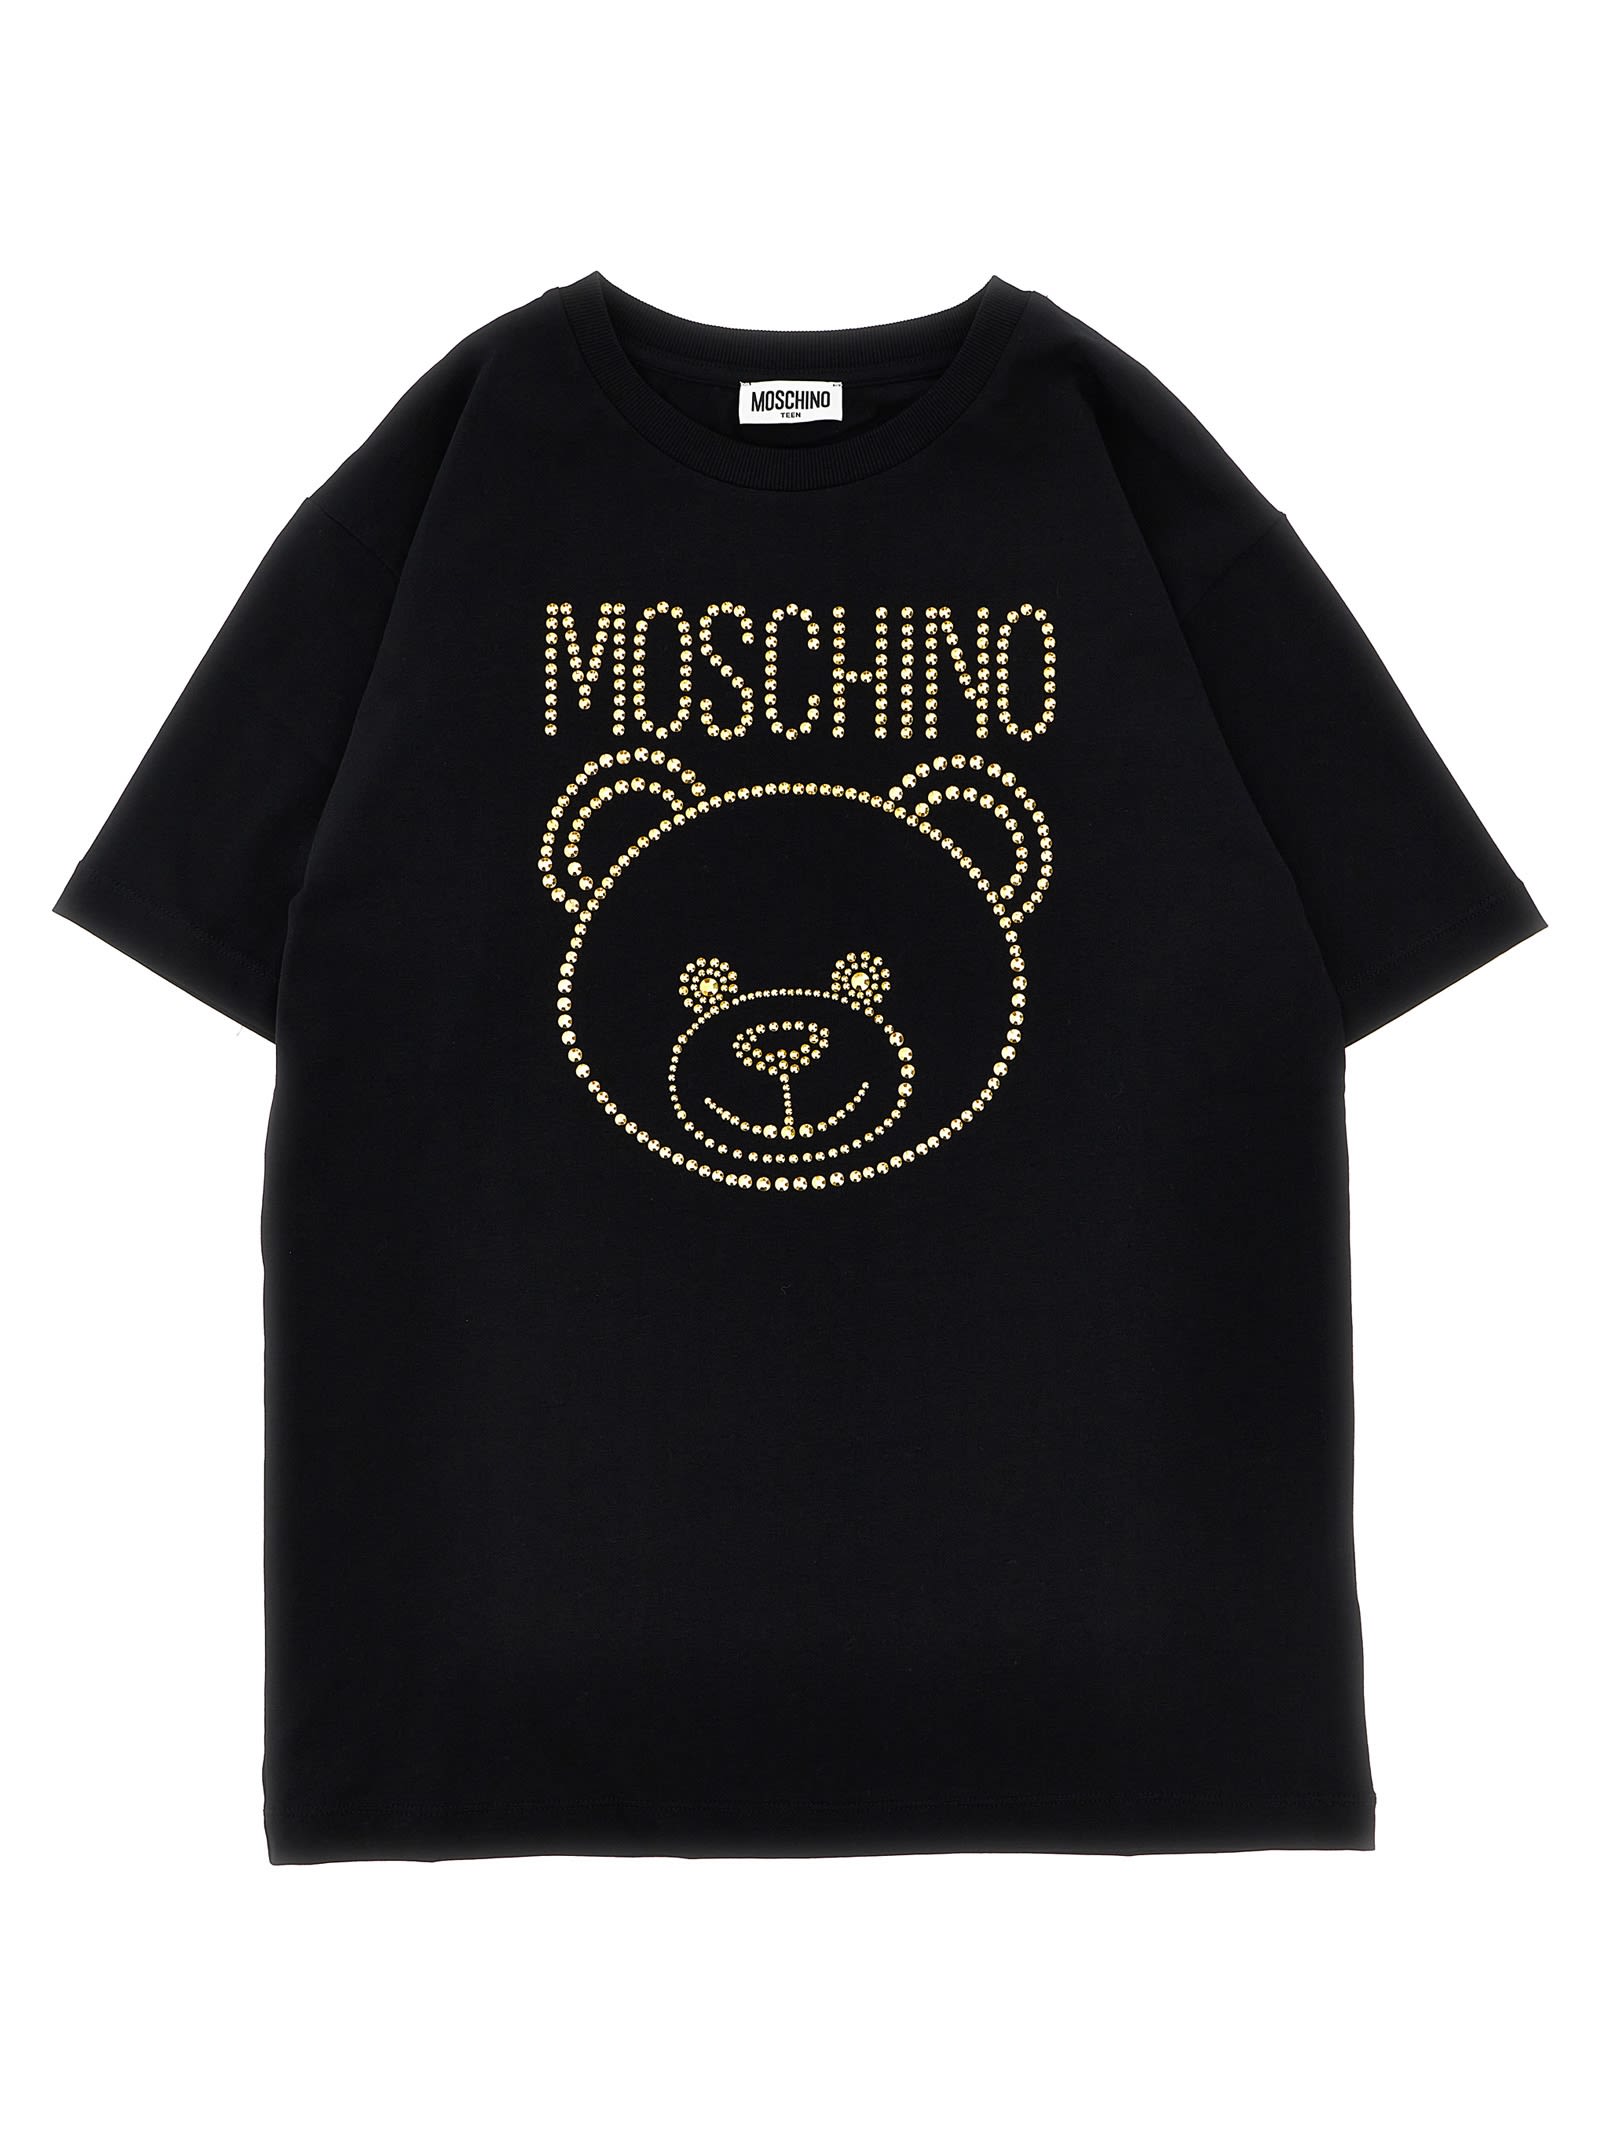 Moschino Kids' Rhinestone Logo T-shirt In Black